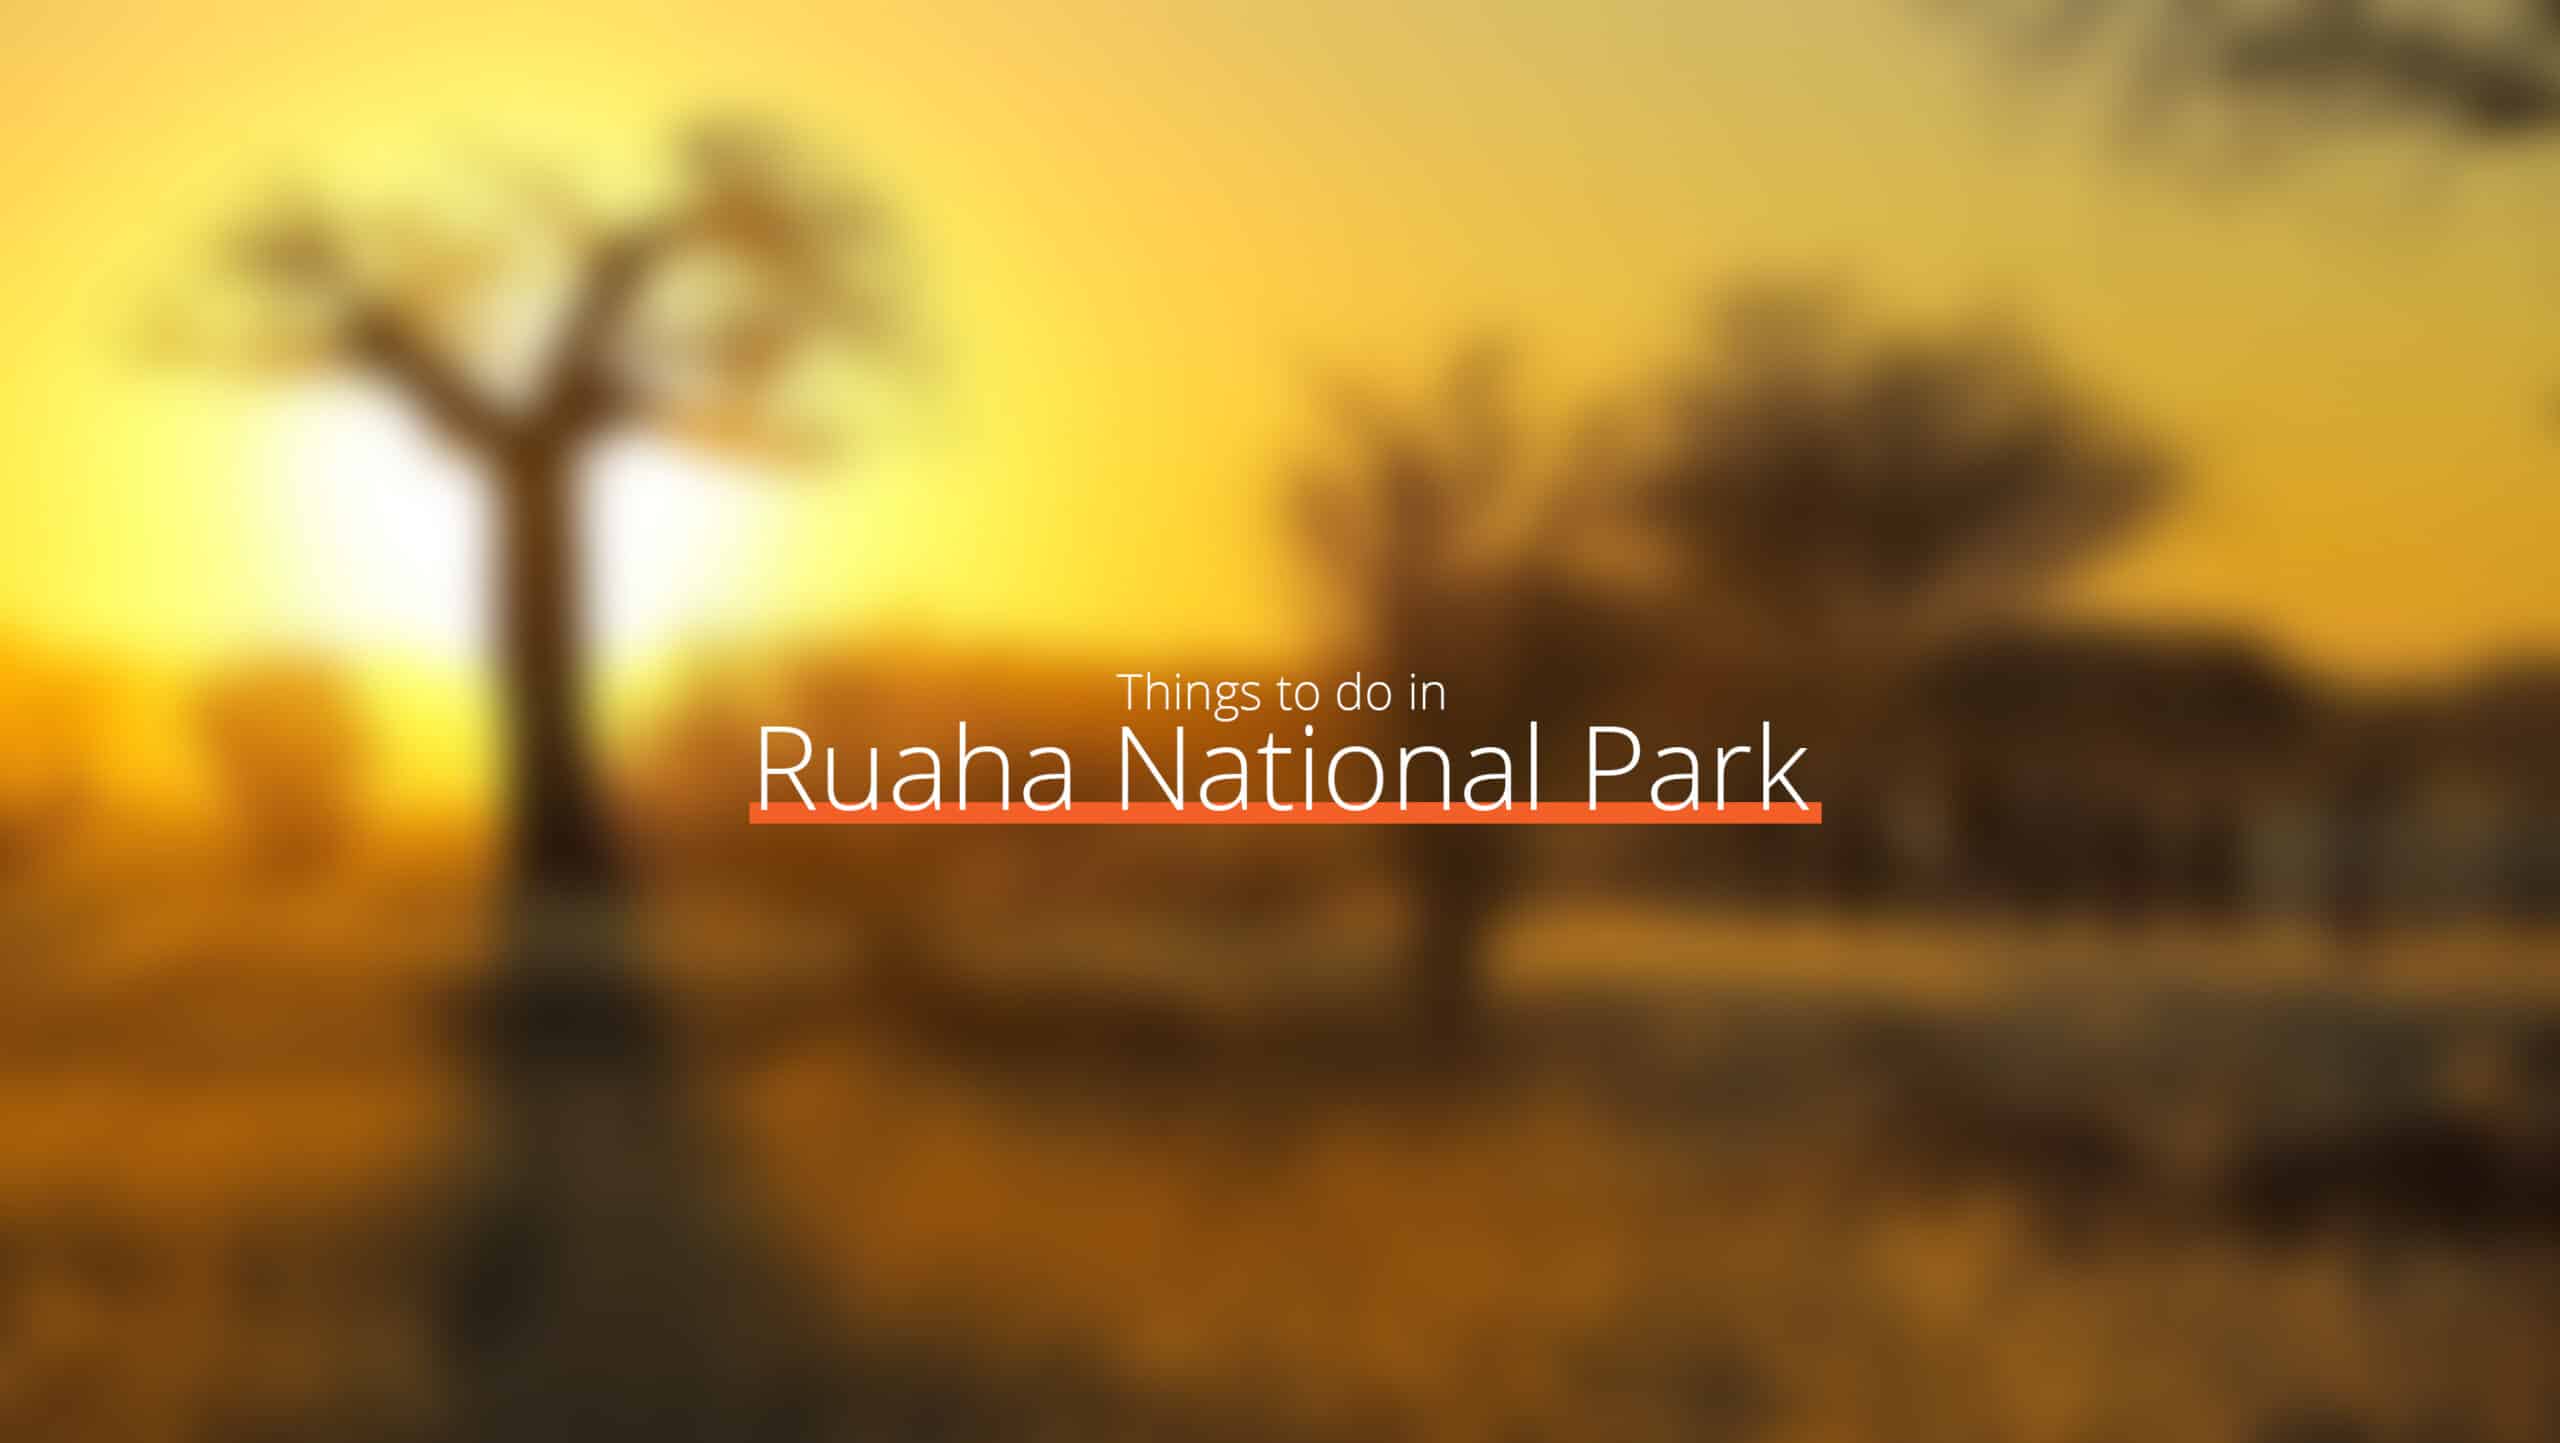 Tanzanie - parc national de ruaha à l'échelle - où aller